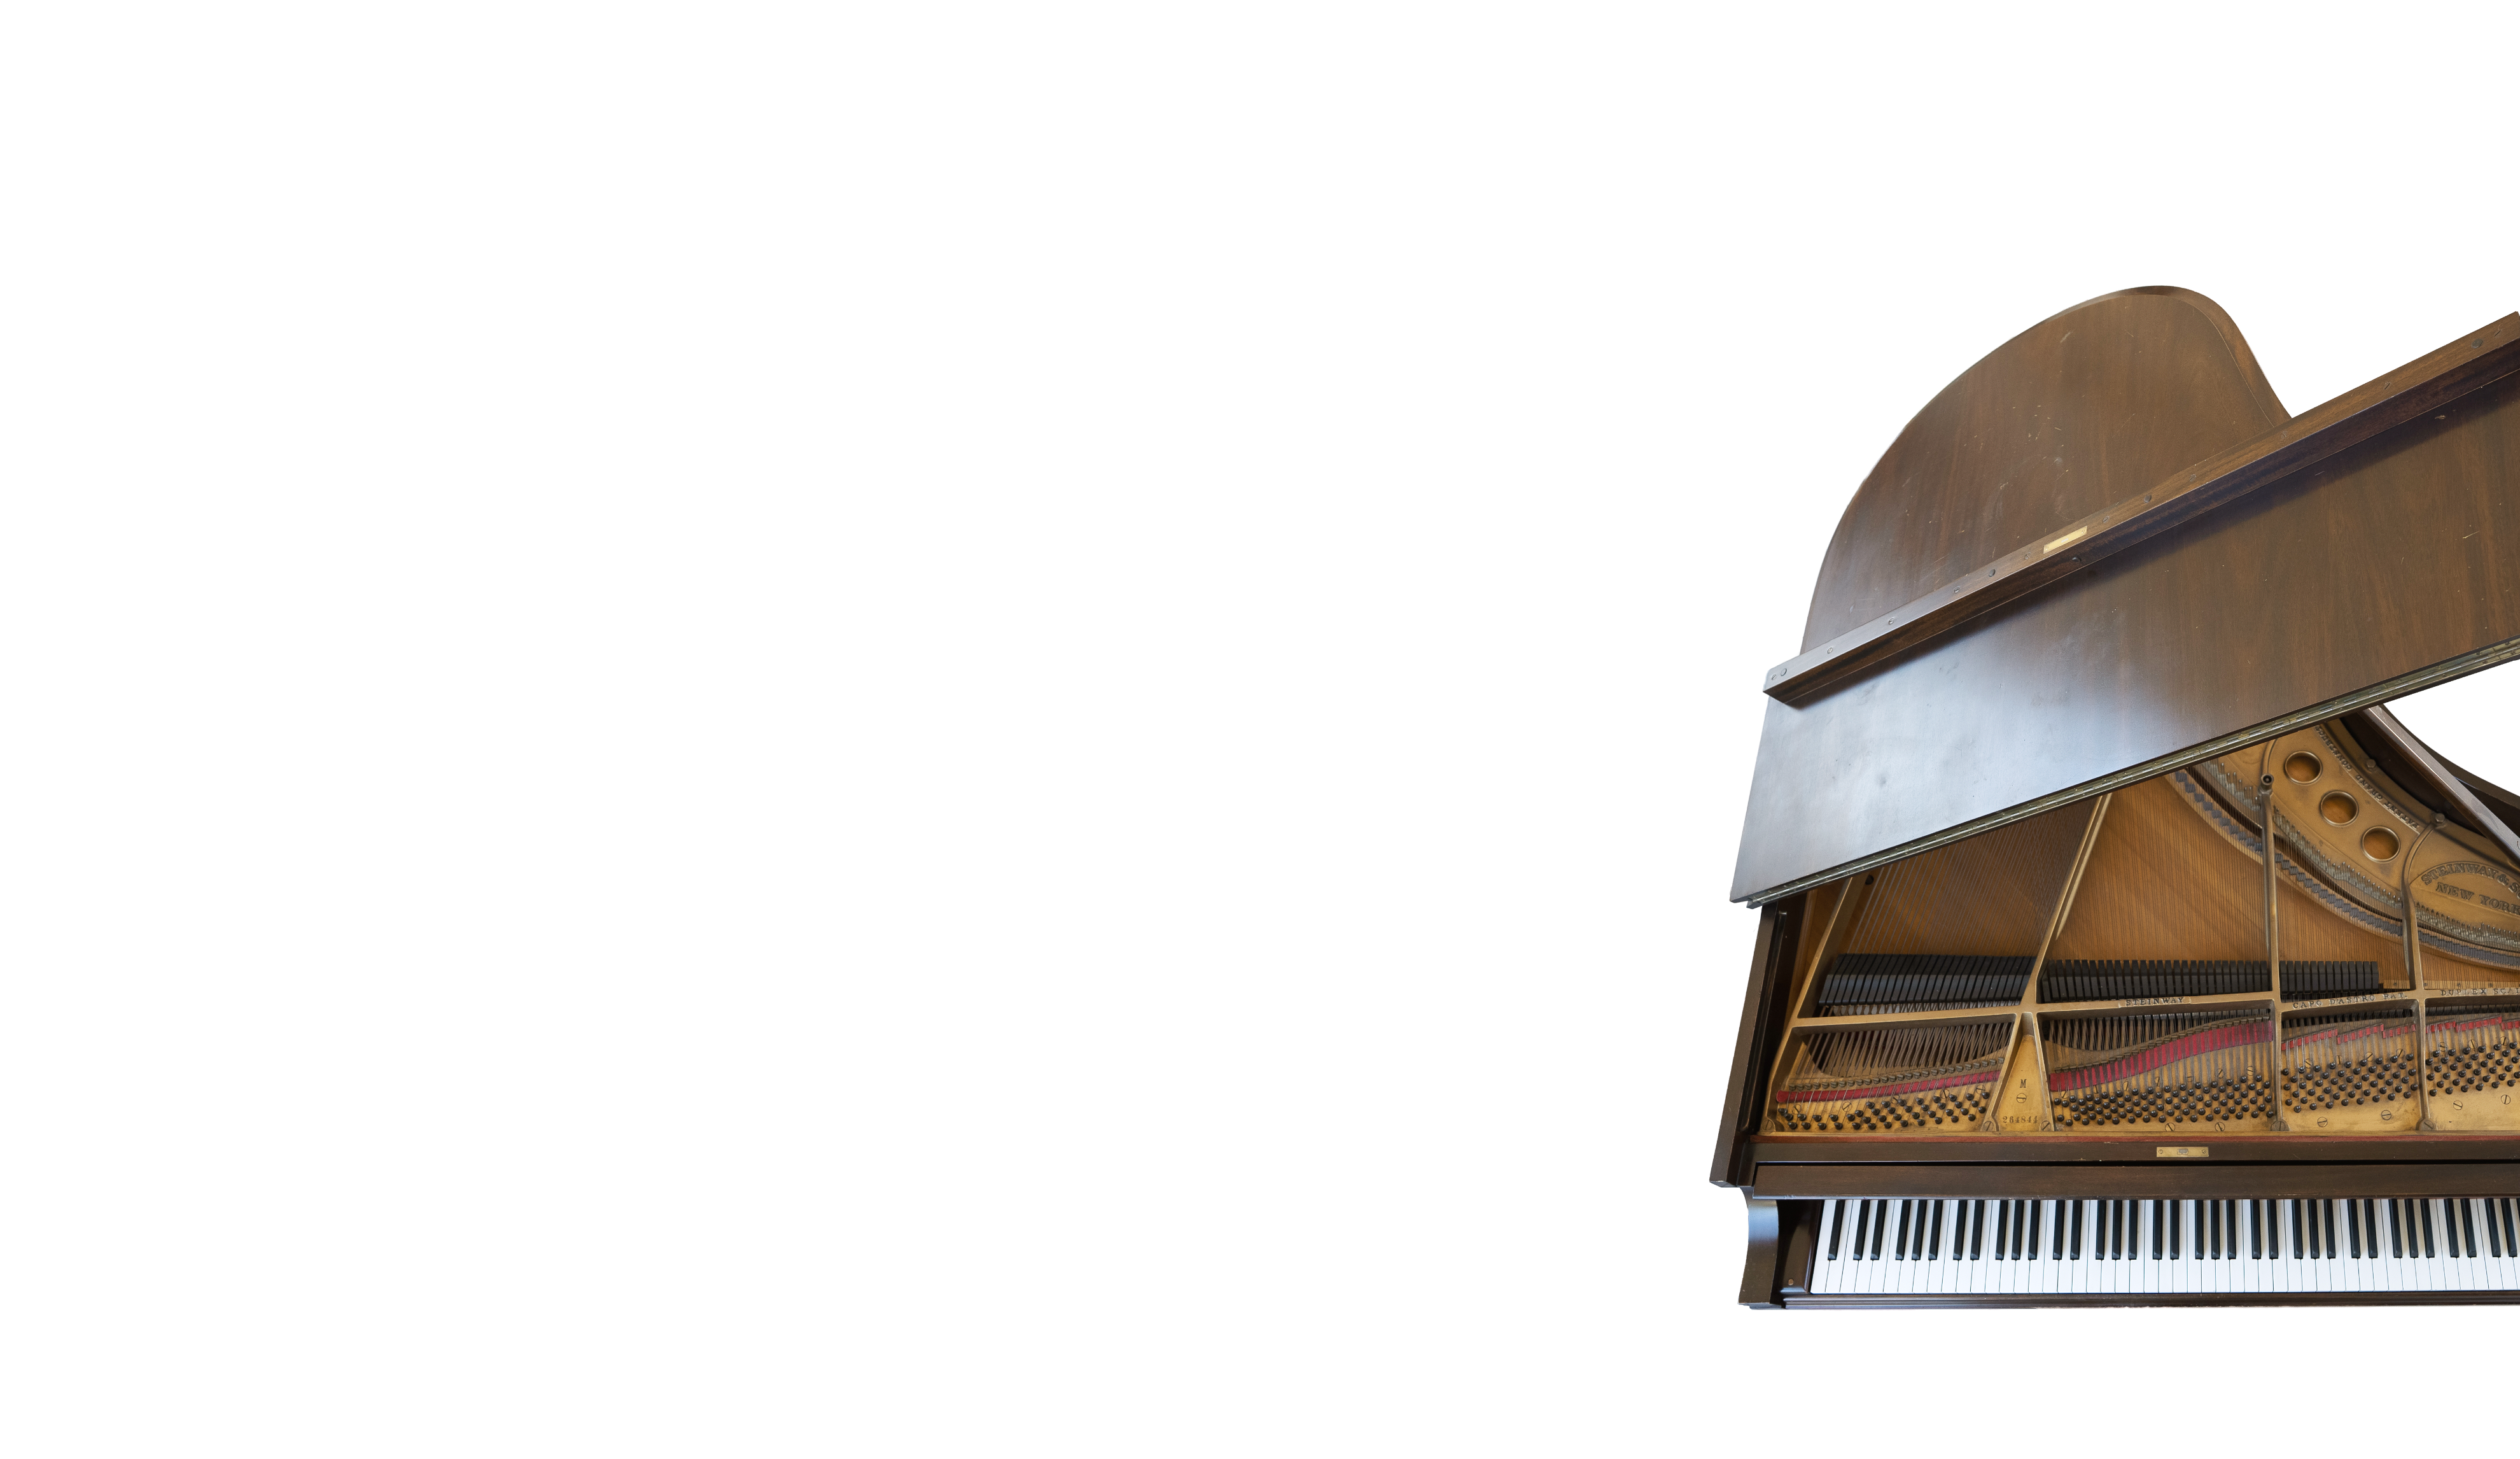 1928 SCORING PIANO